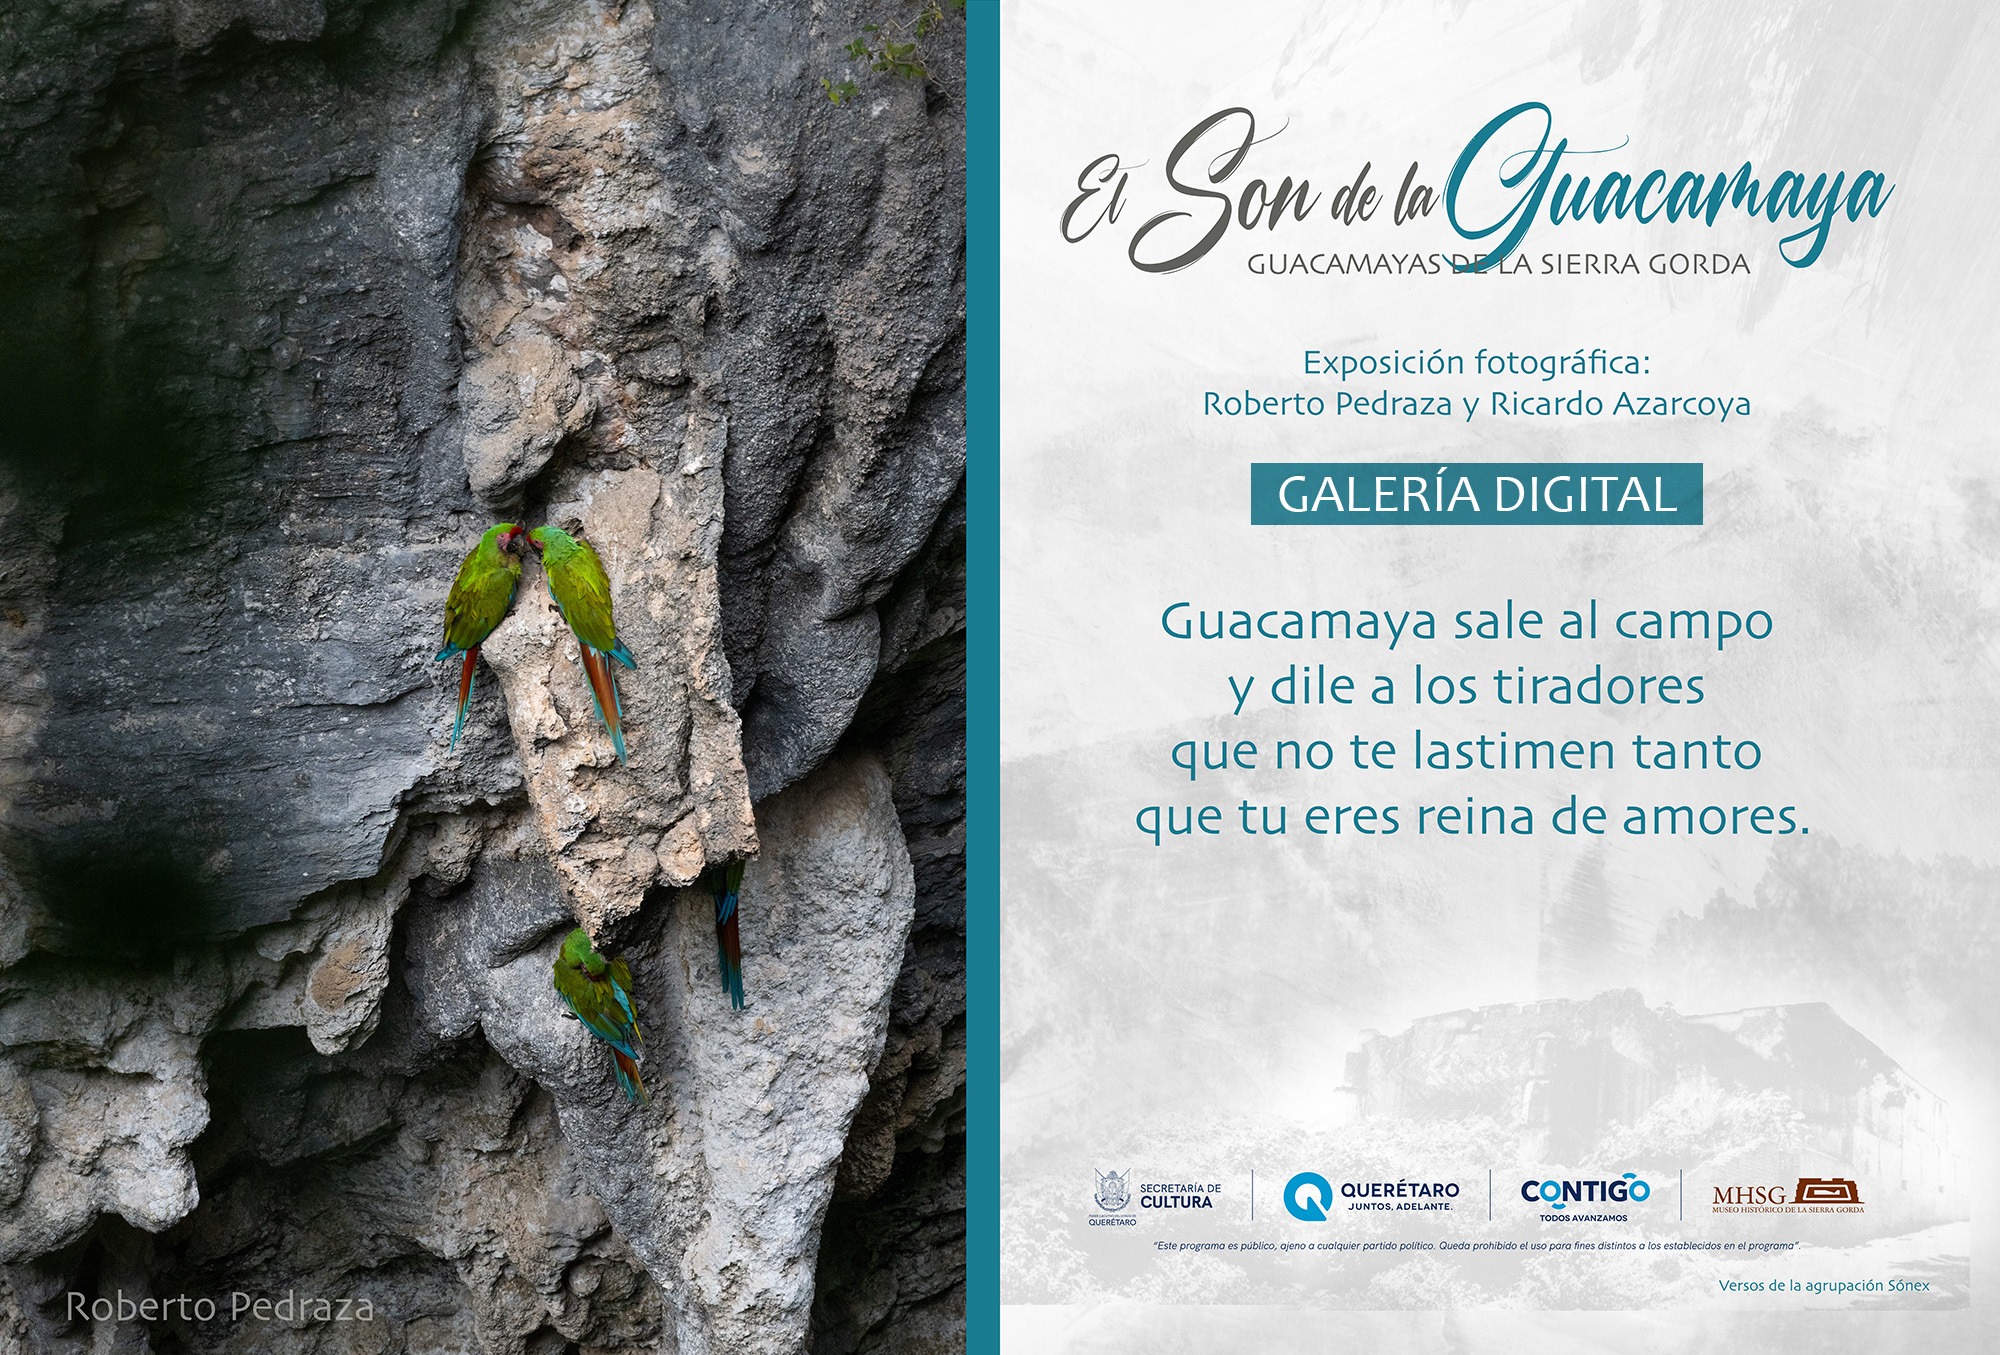 El Son de la Guacamaya Guacamayas de la Sierra Gorda